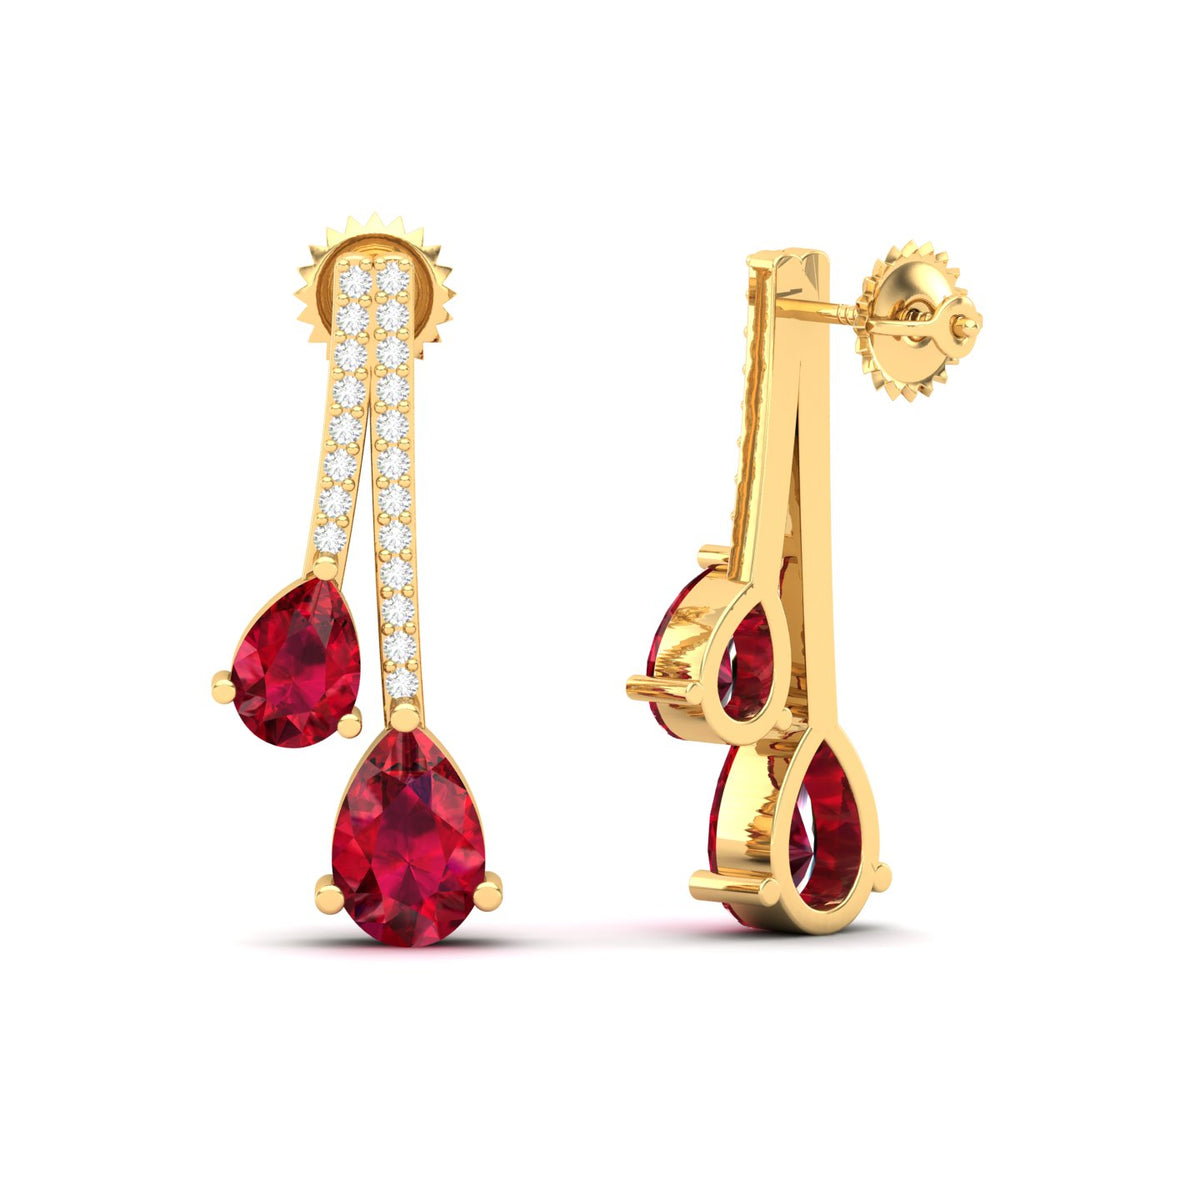 Maurya Hanging Berries Ruby Drop Earrings with Diamonds